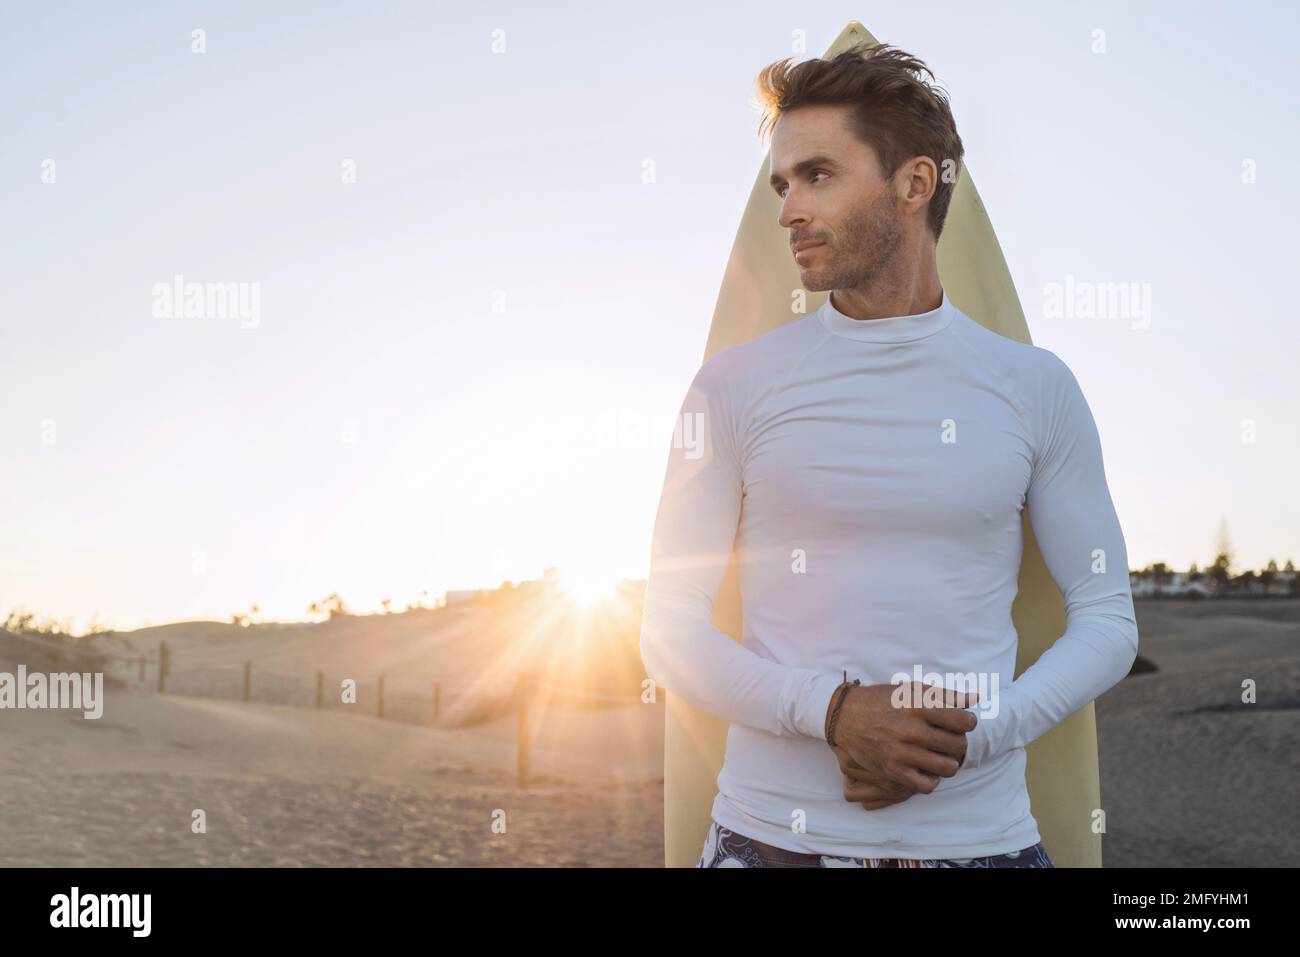 Joven chico surfista guapo está de pie junto a su tabla de surf y vestido con camisa blanca, vacía, en blanco de lycra. Maqueta horizontal con destello solar. Foto de stock